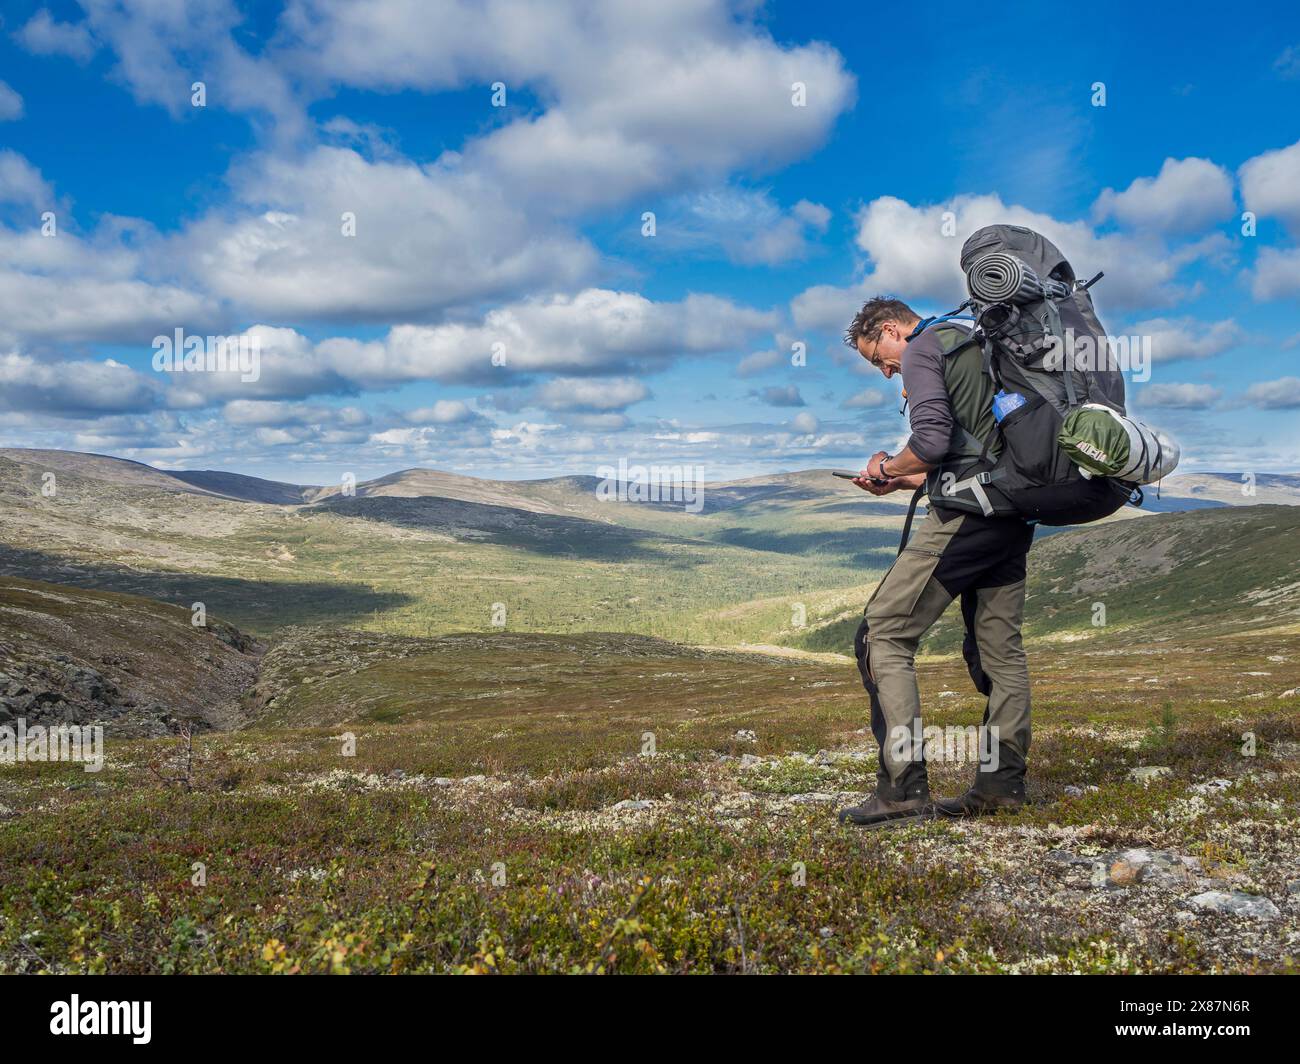 Finlande, Laponie, Hiker vérifier le téléphone dans le parc national Urho Kekkonen Banque D'Images